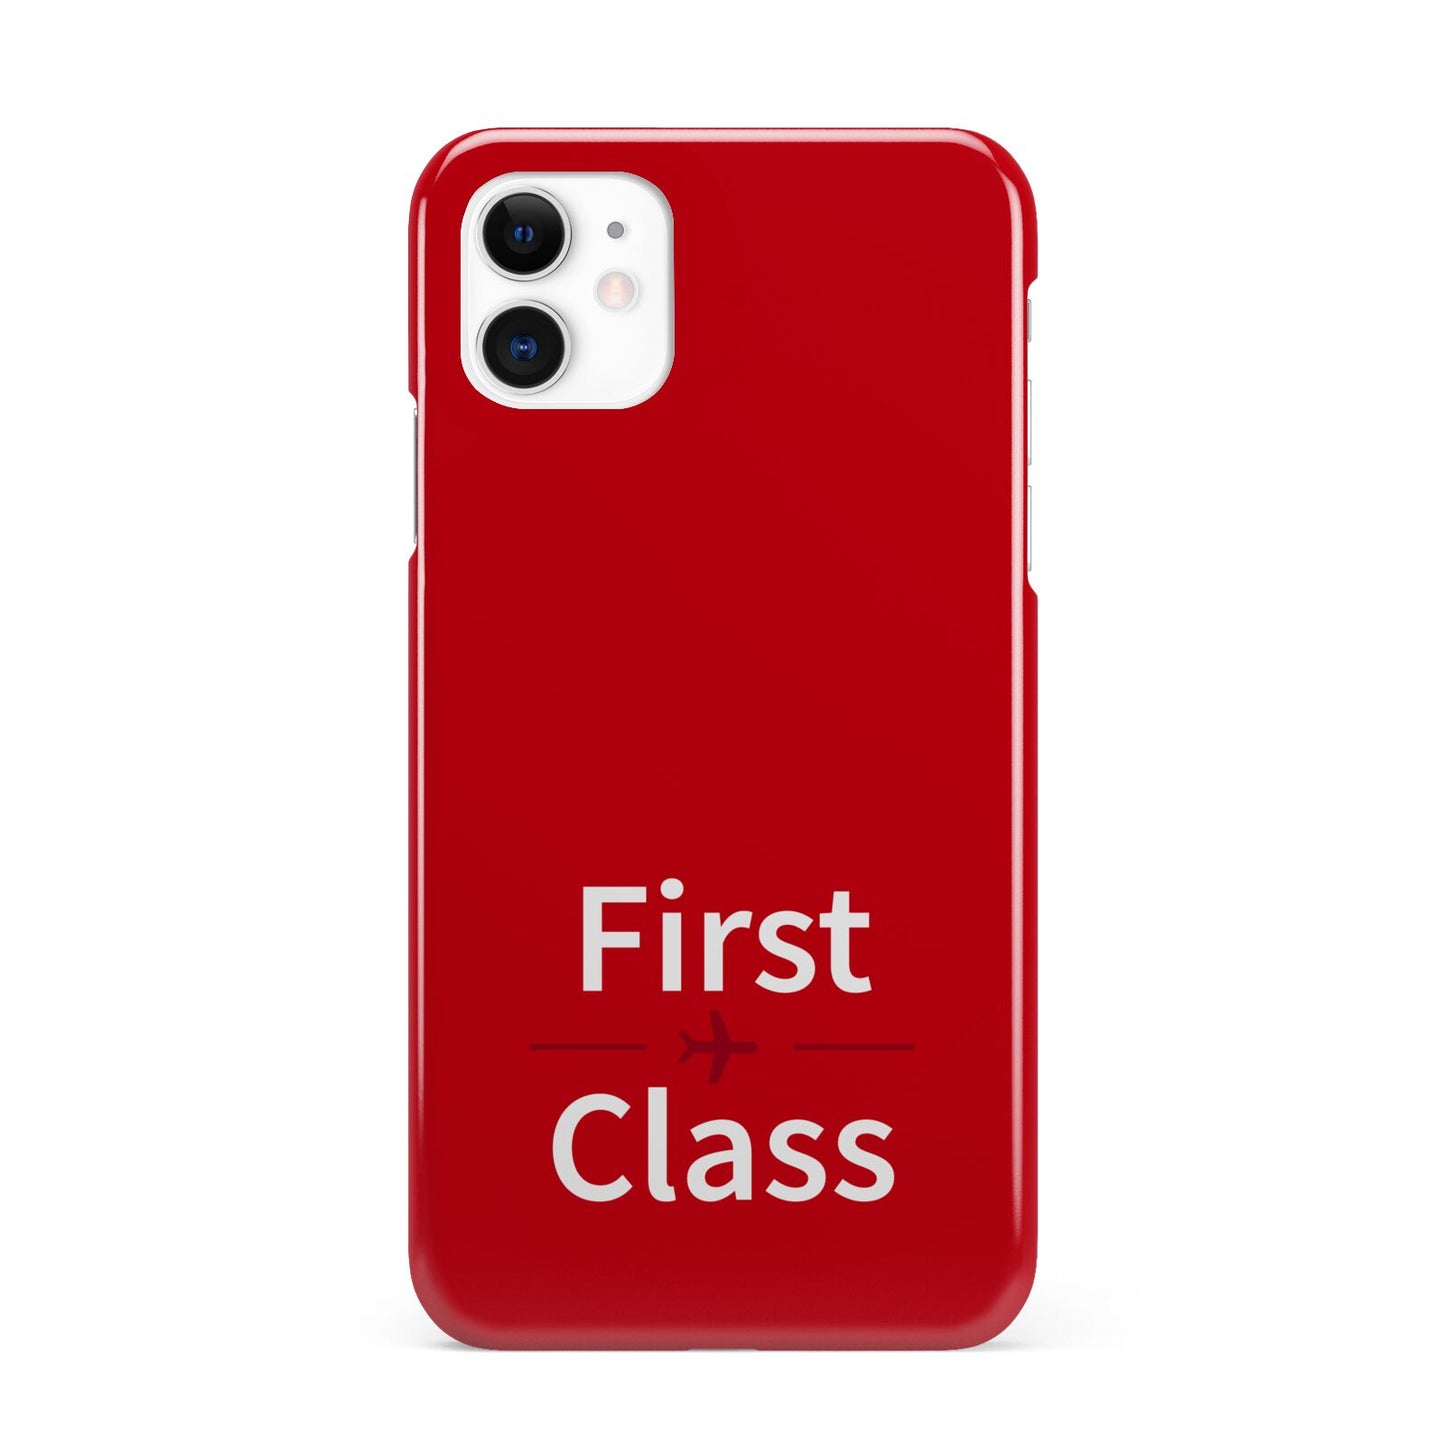 First Class iPhone 11 3D Snap Case